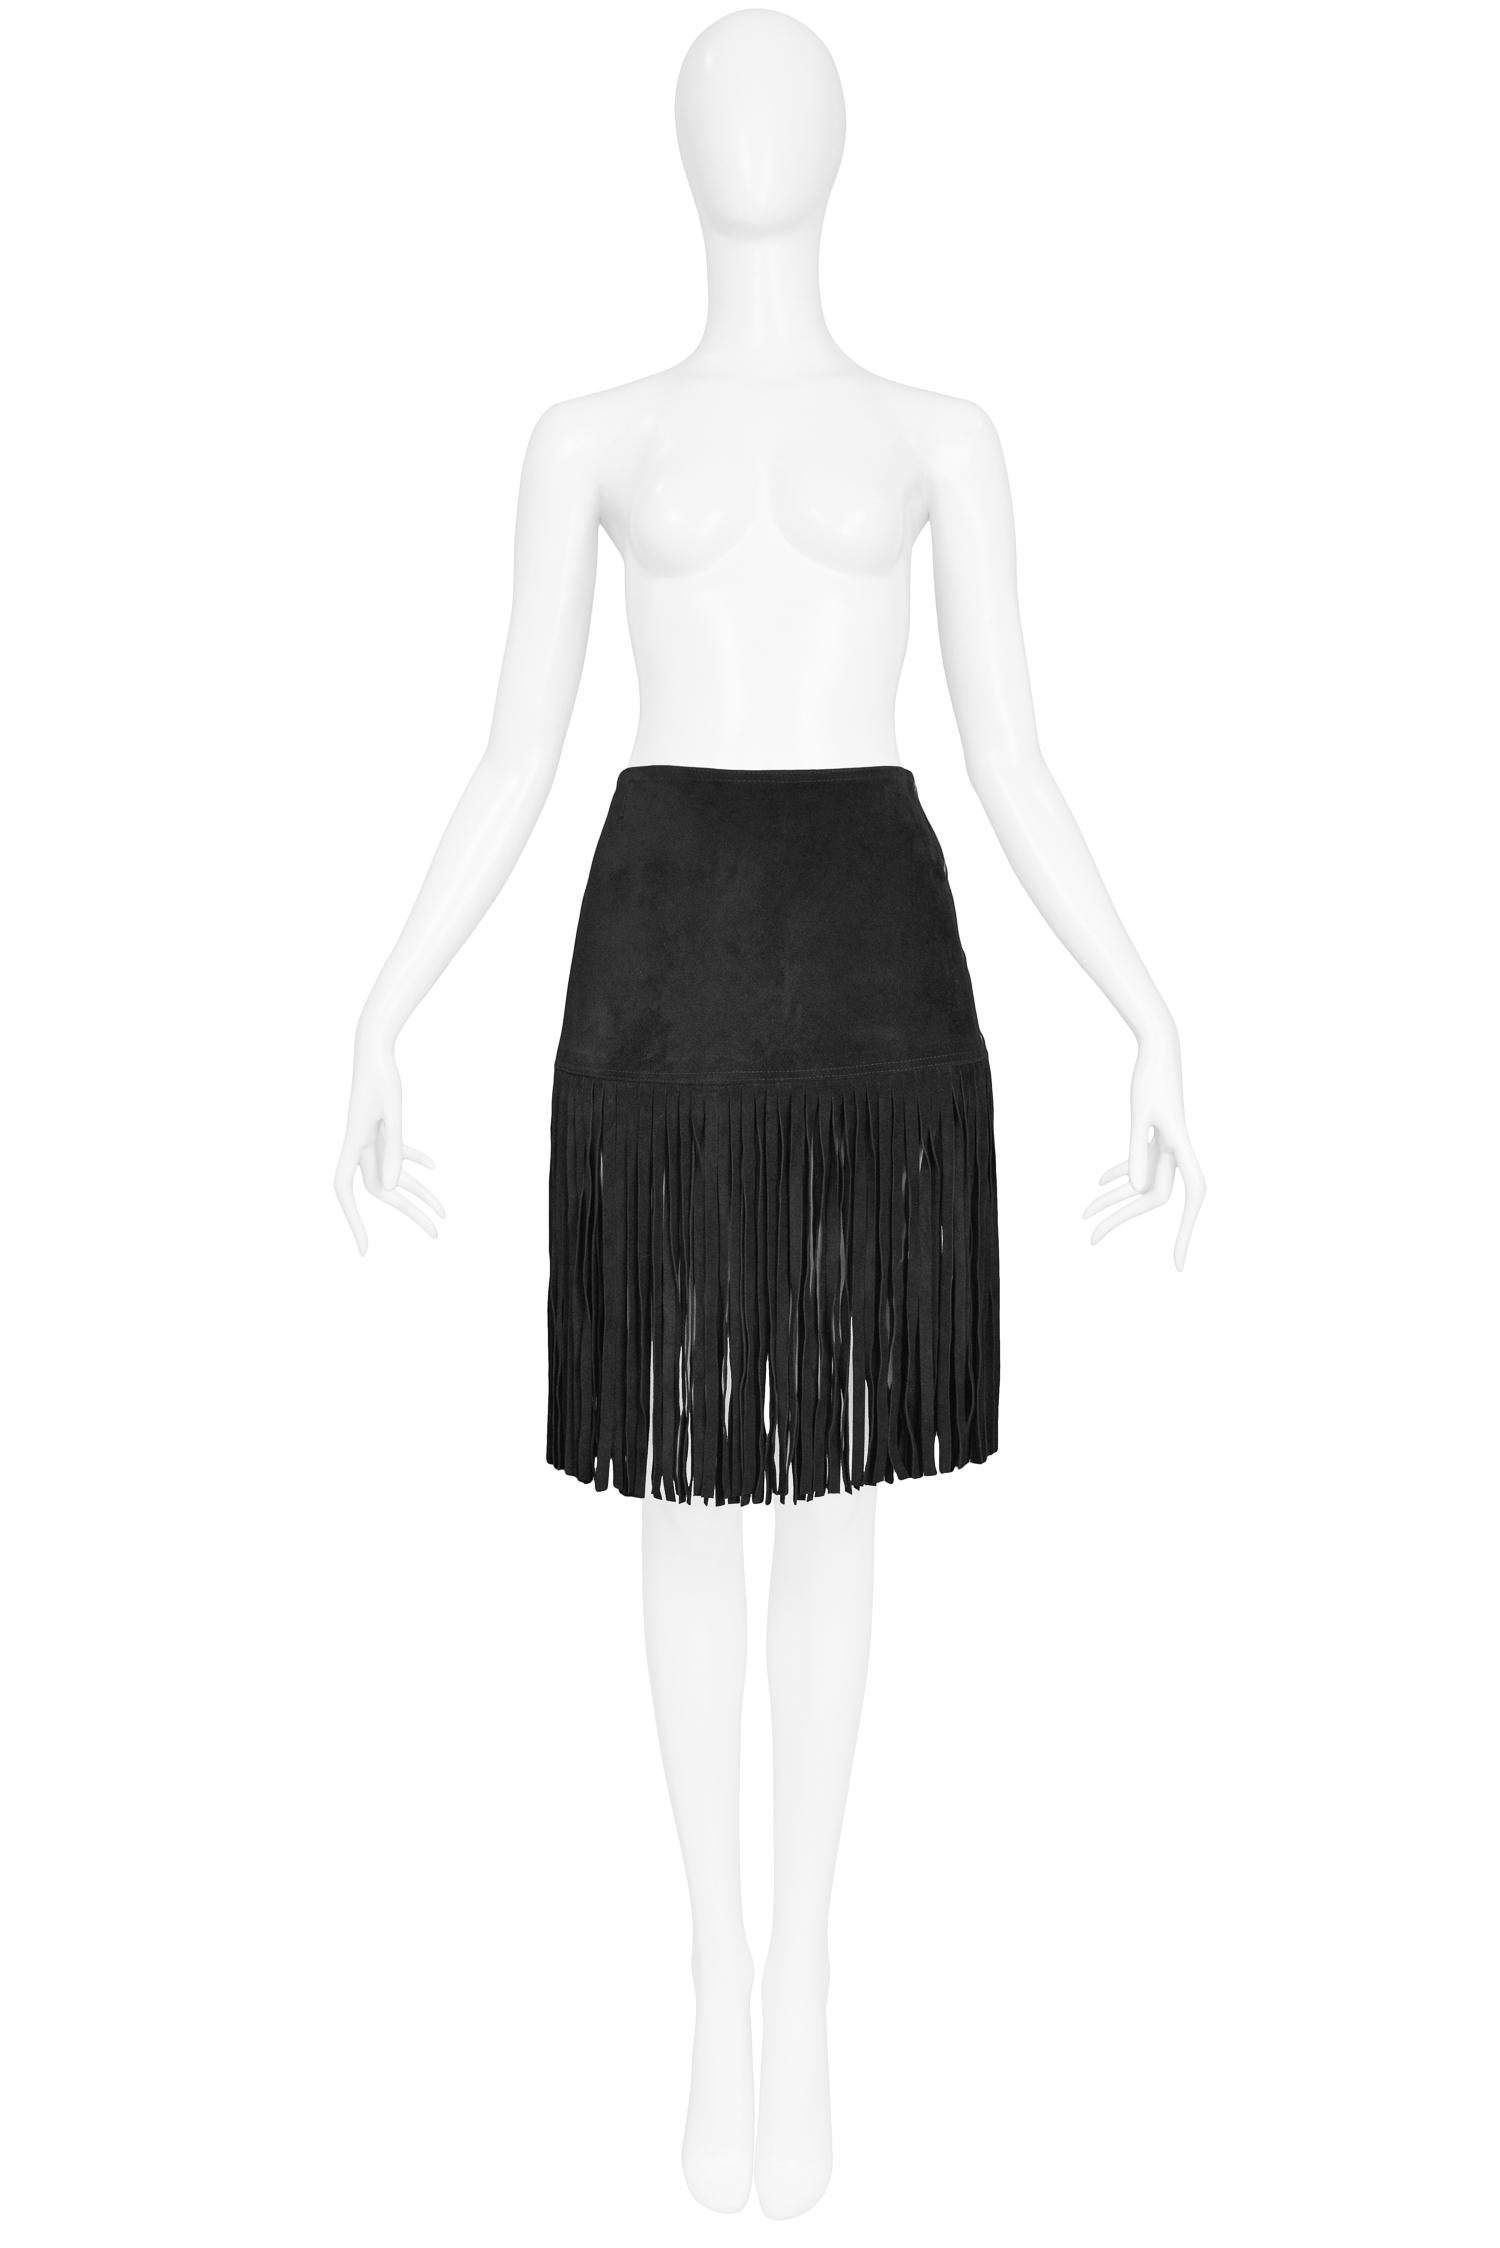 Vintage Yves Saint Laurent black suede skirt with knee-length fringe trim at hem and slit pockets at hips. 

Excellent Condition.

Size: 38